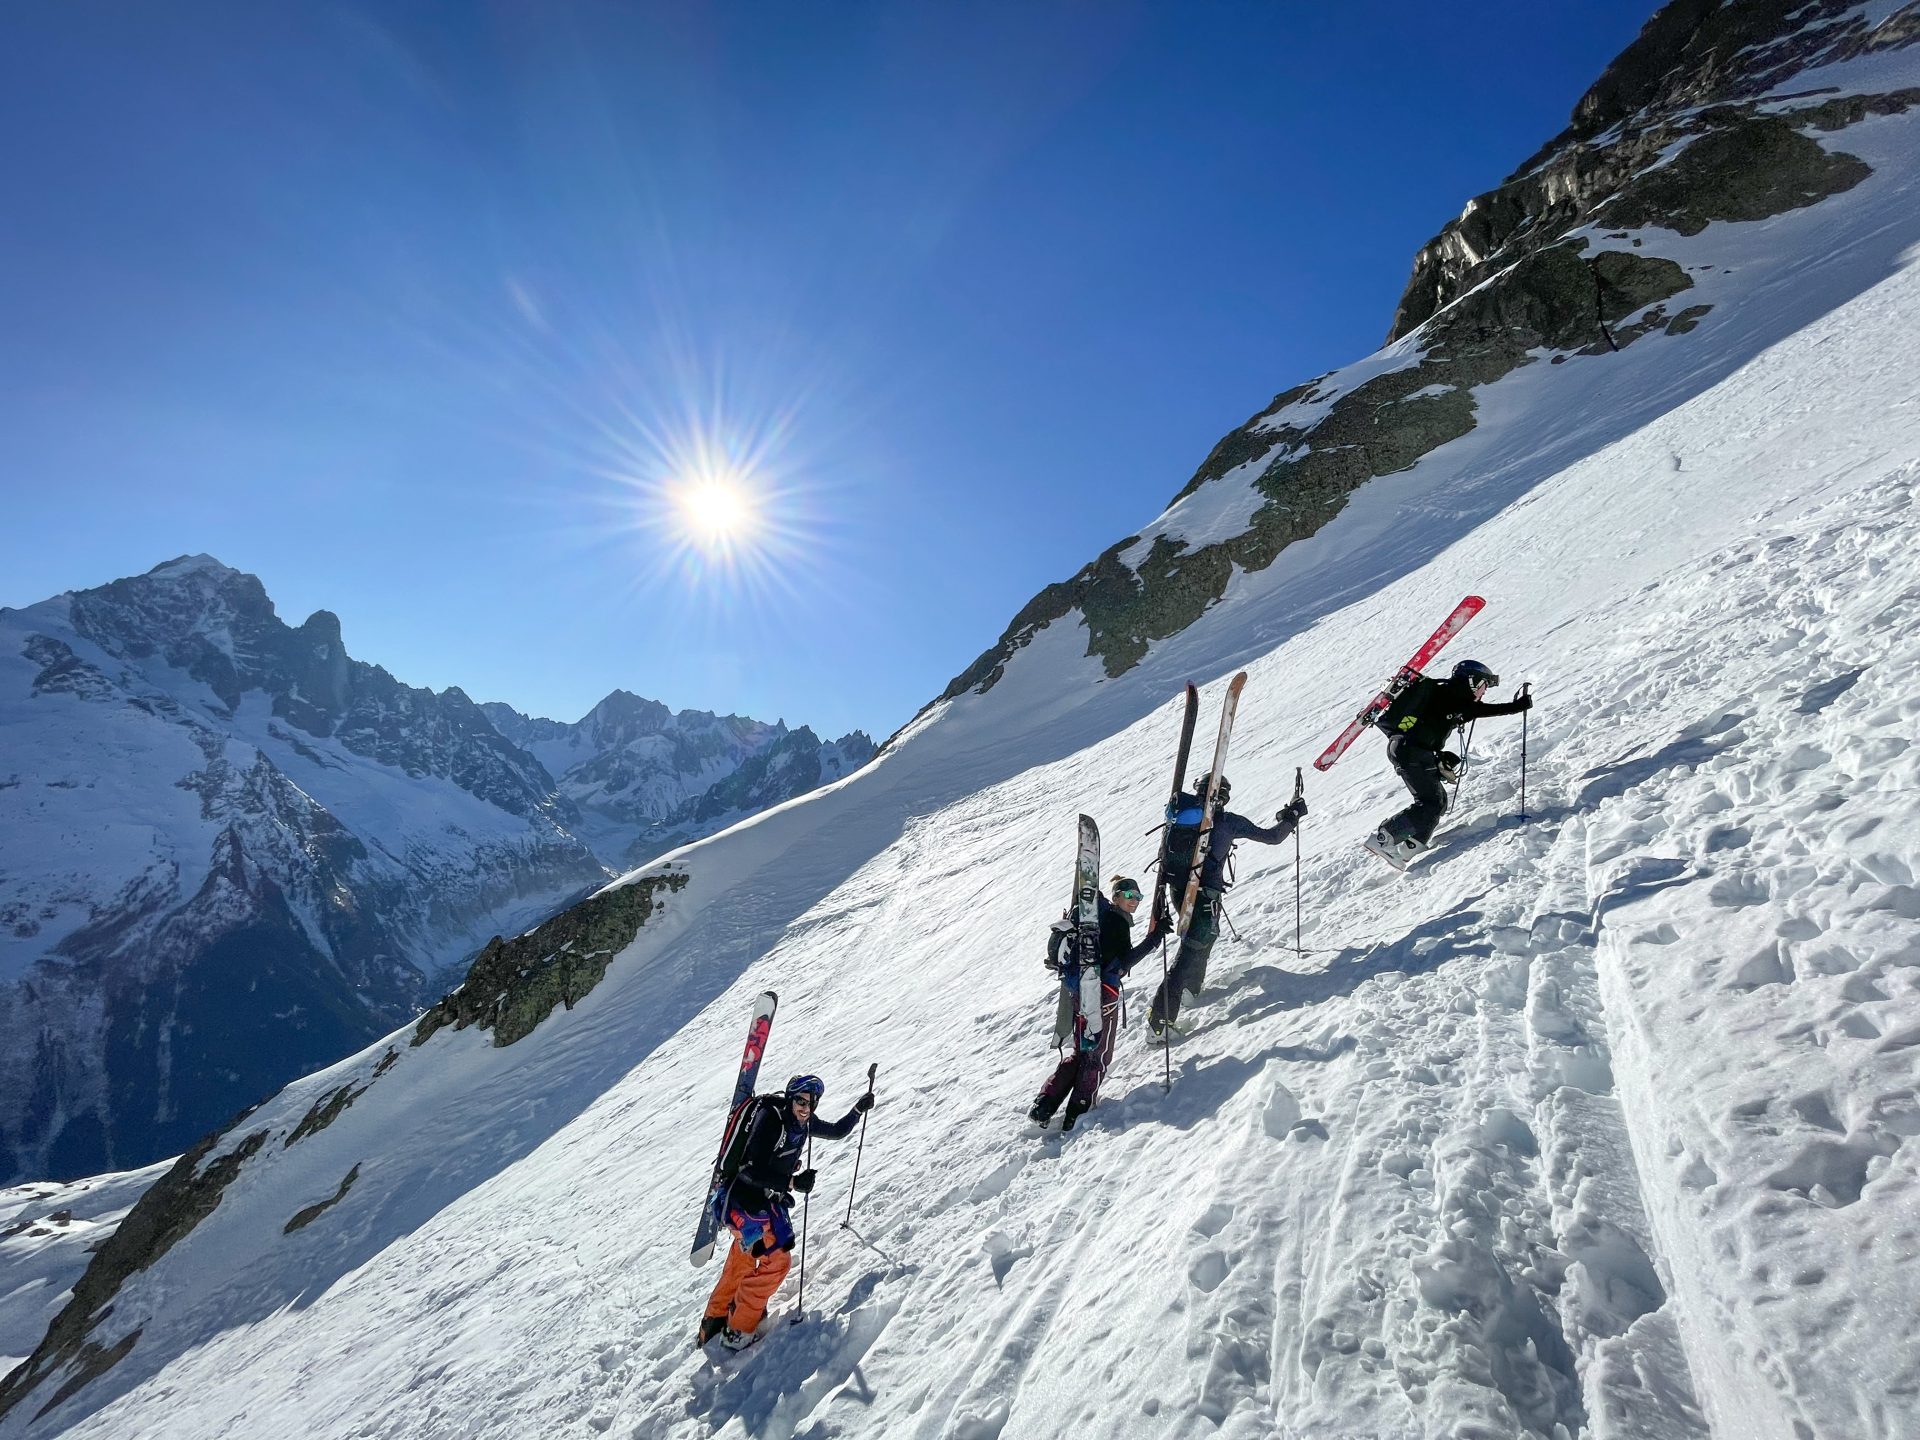 Aiguille Rouge Mont Blanc ski de randonnée Crochue Bérard alpinisme Chamonix